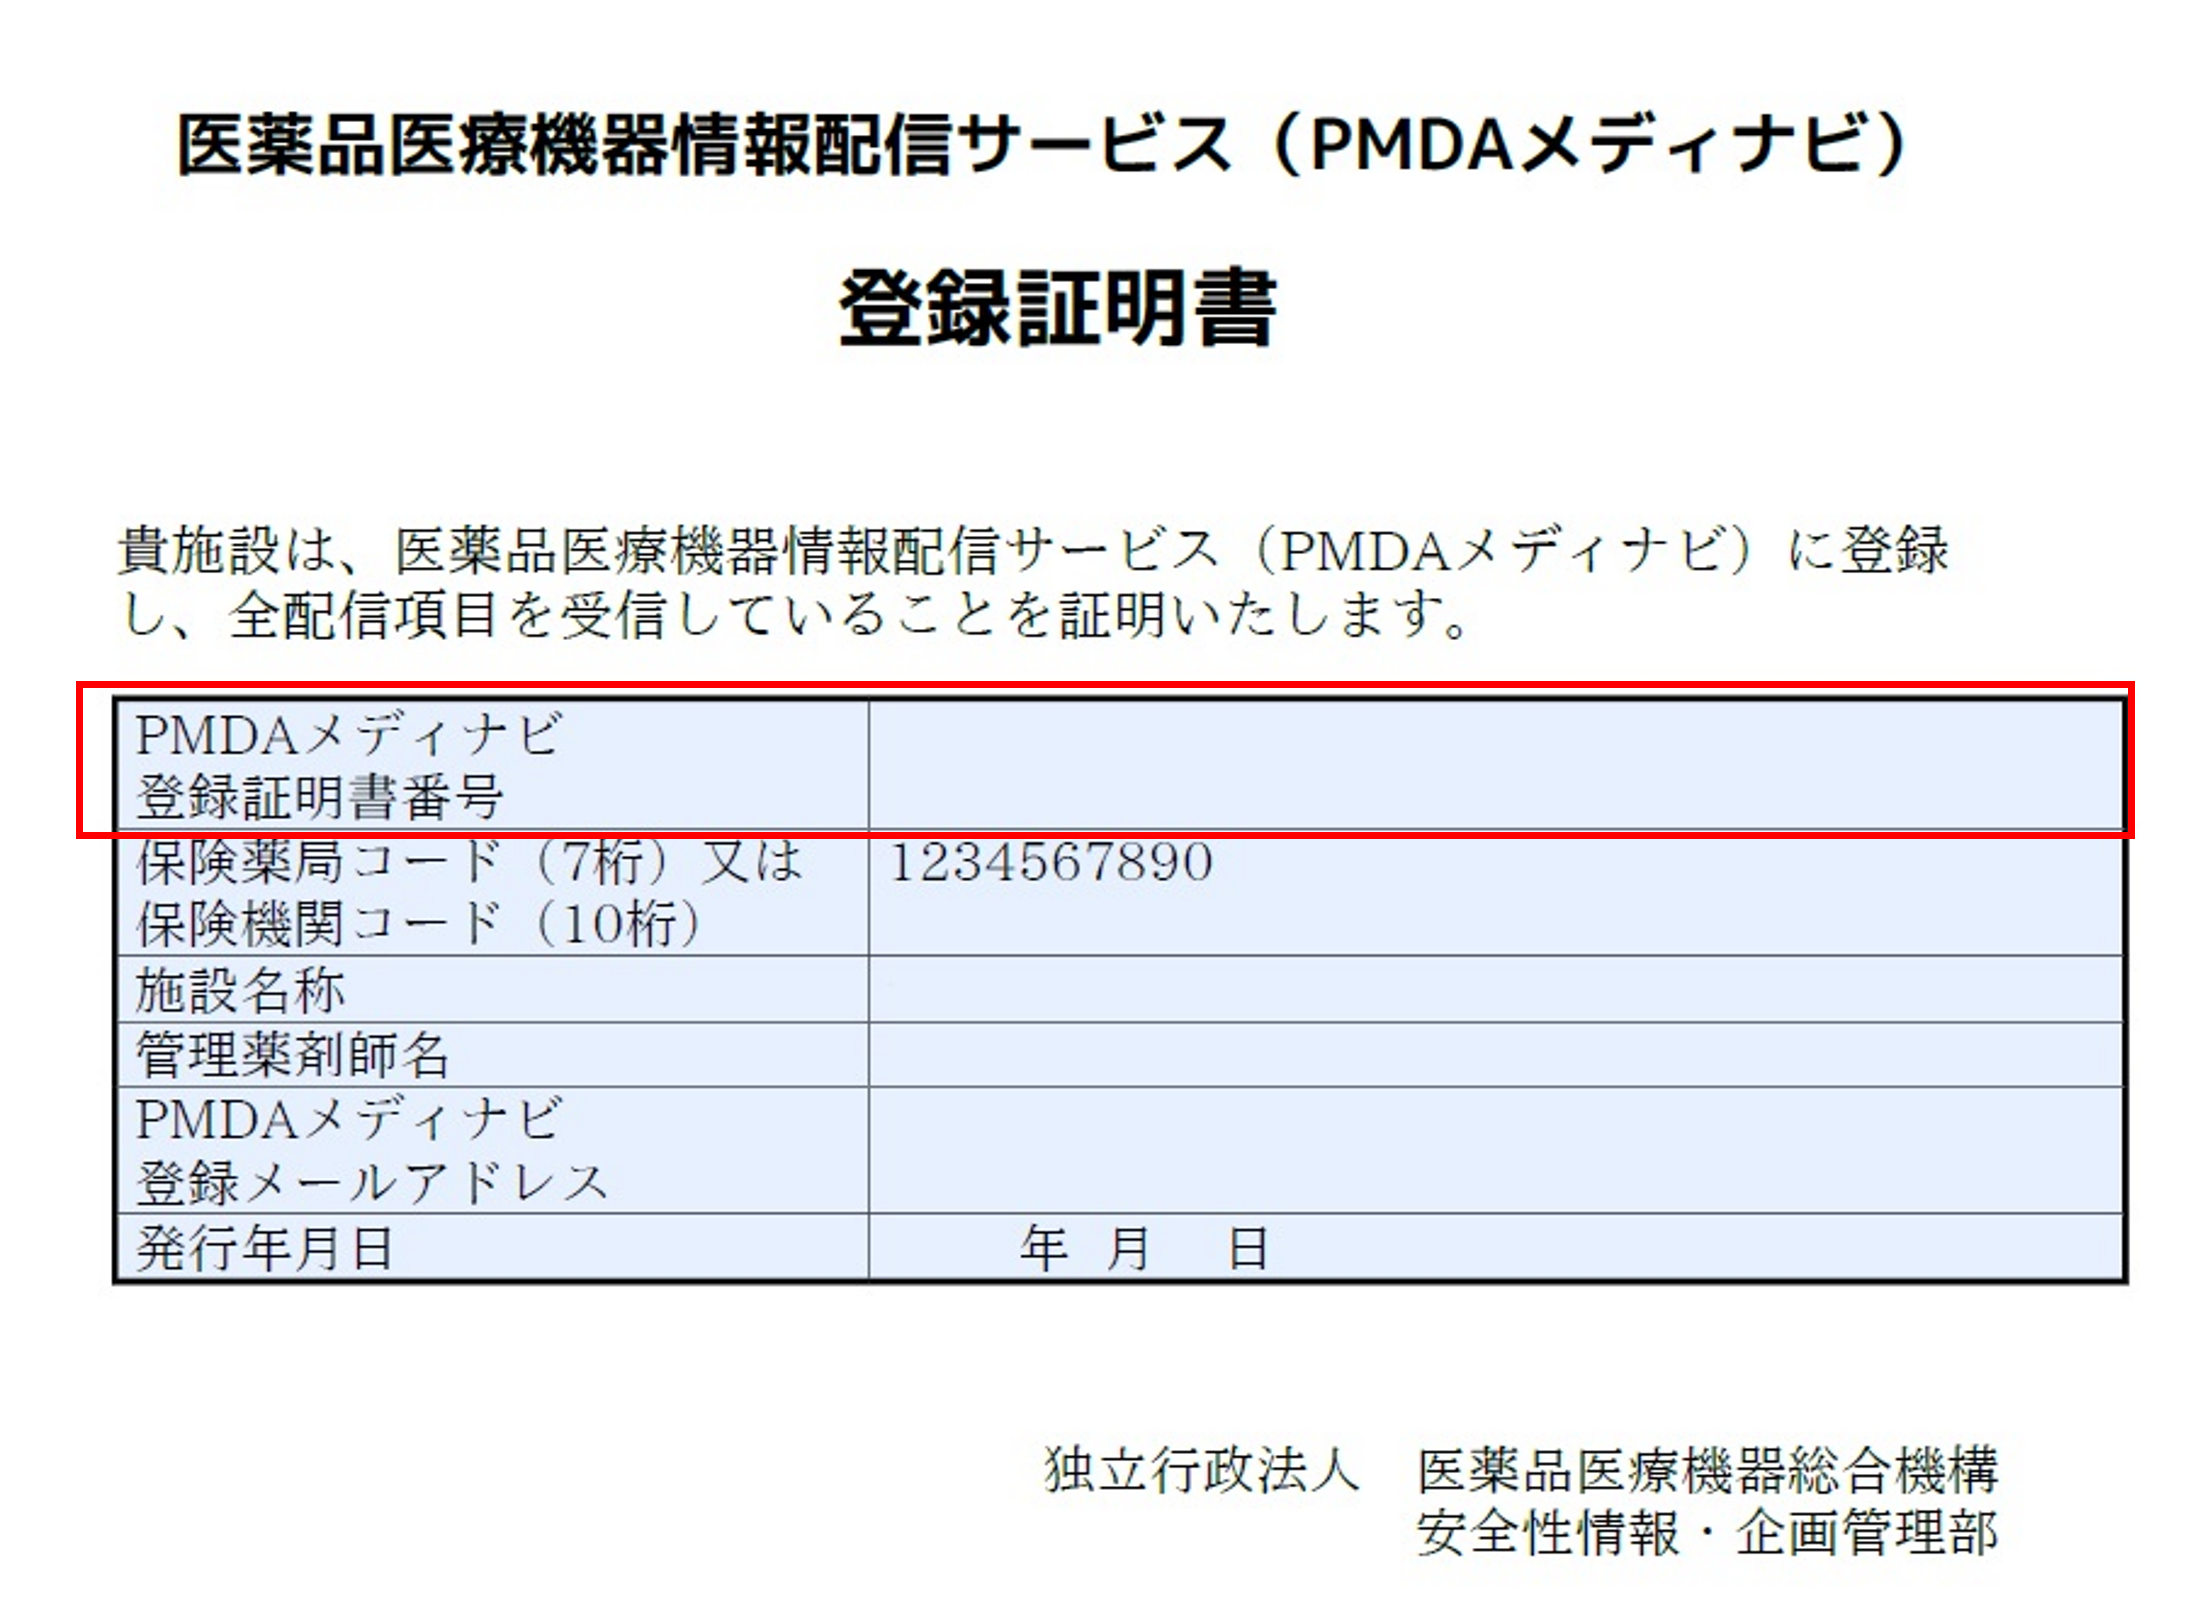 PMDAメディナビ登録証明書のサンプル画像です。PMDAメディナビ登録証明書番号は表内の最上段に記載されています。